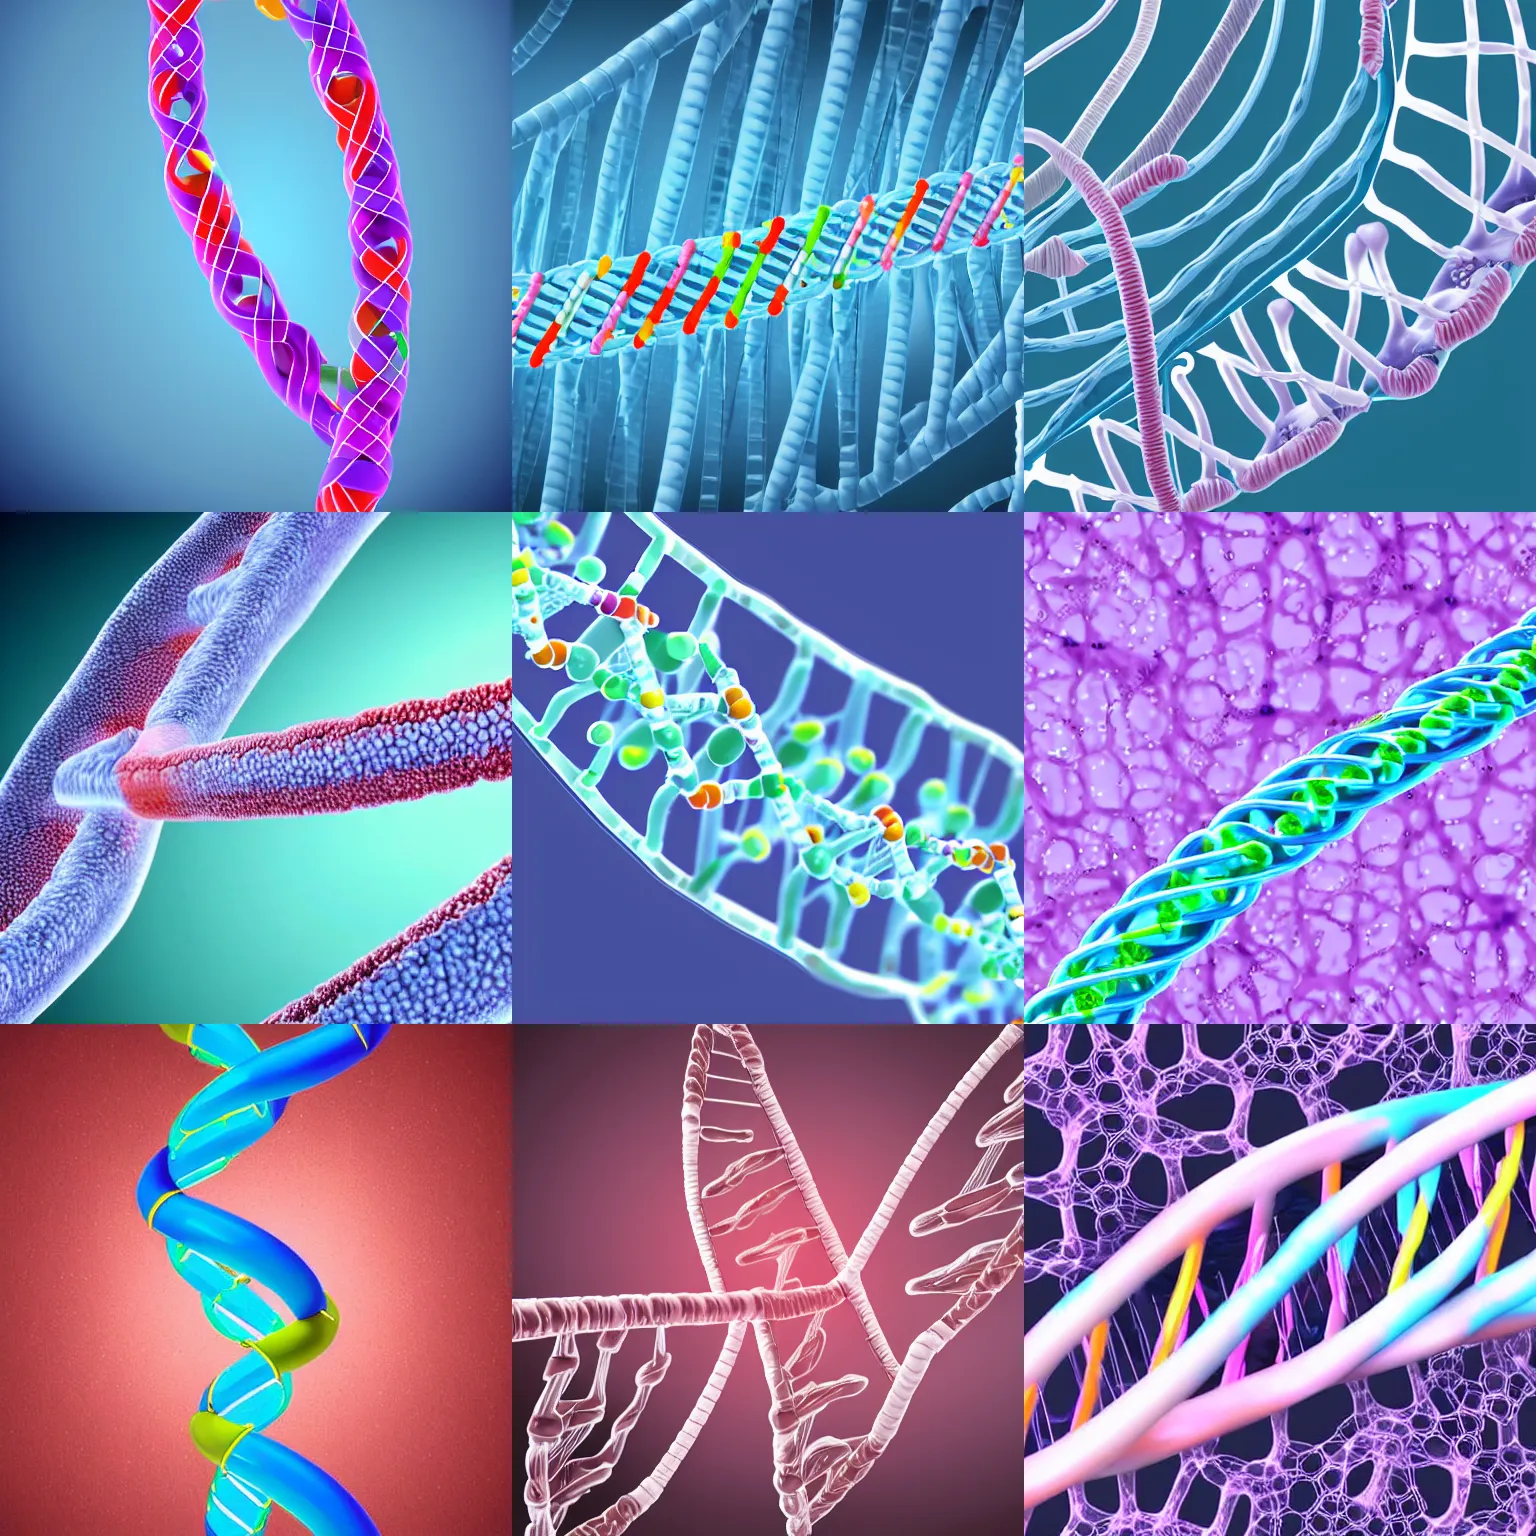 Prompt: medical illustration of DNA,